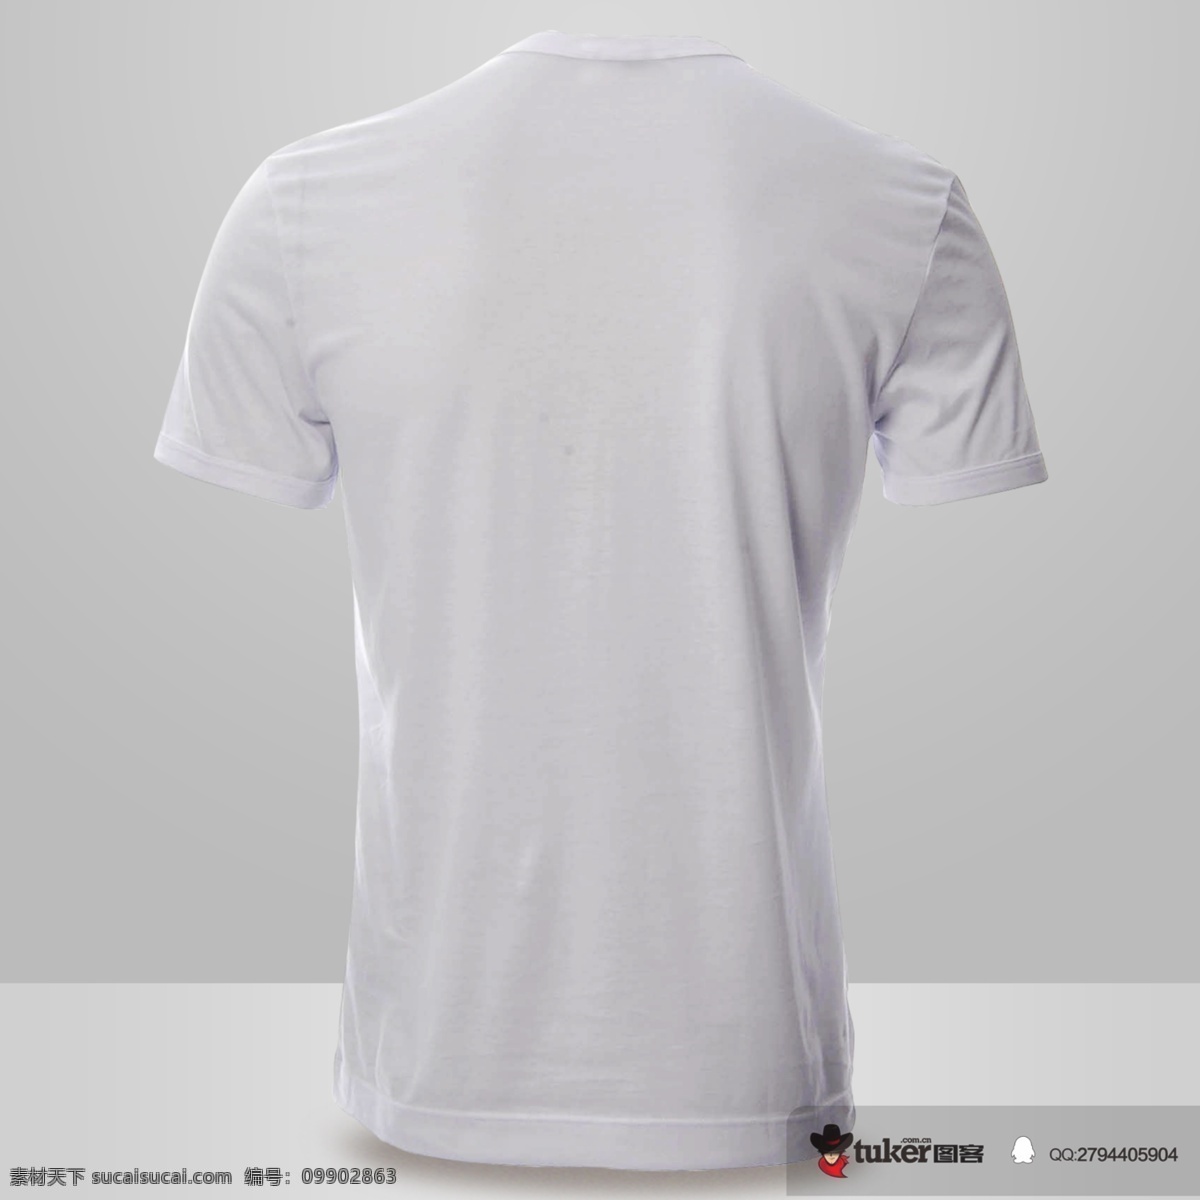 白色衬衫 智能对象 vi提案神器 样机 男士 t恤 衬衫 上衣 包装 模板 psd分层 灰色